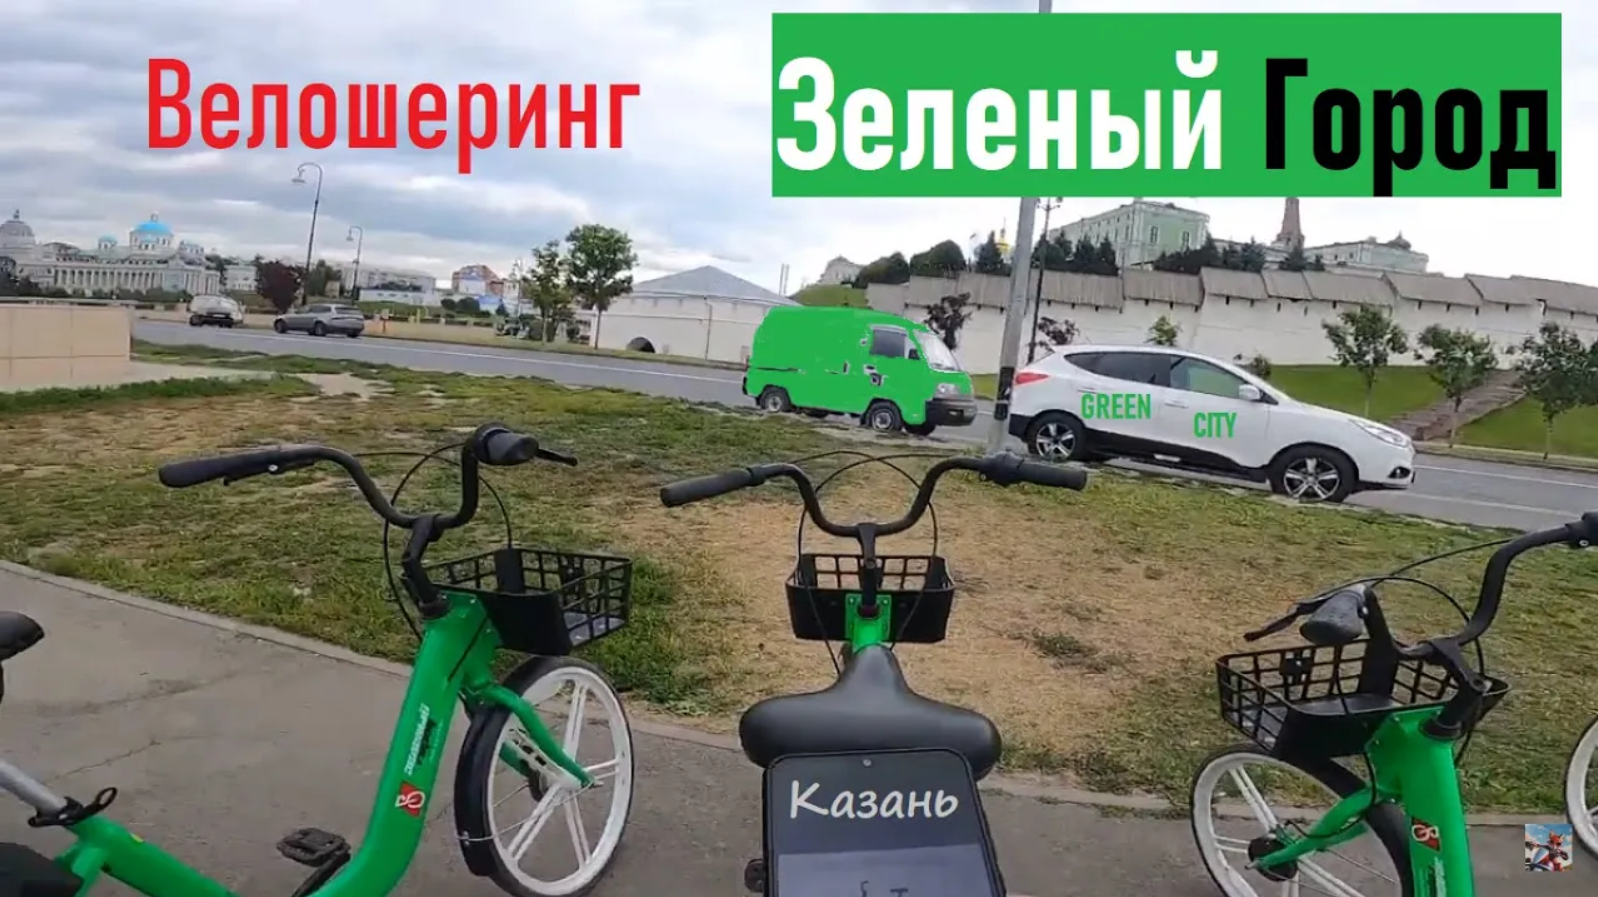 Велошеринг Green City в Казани тестировал #ЛёхаЛис